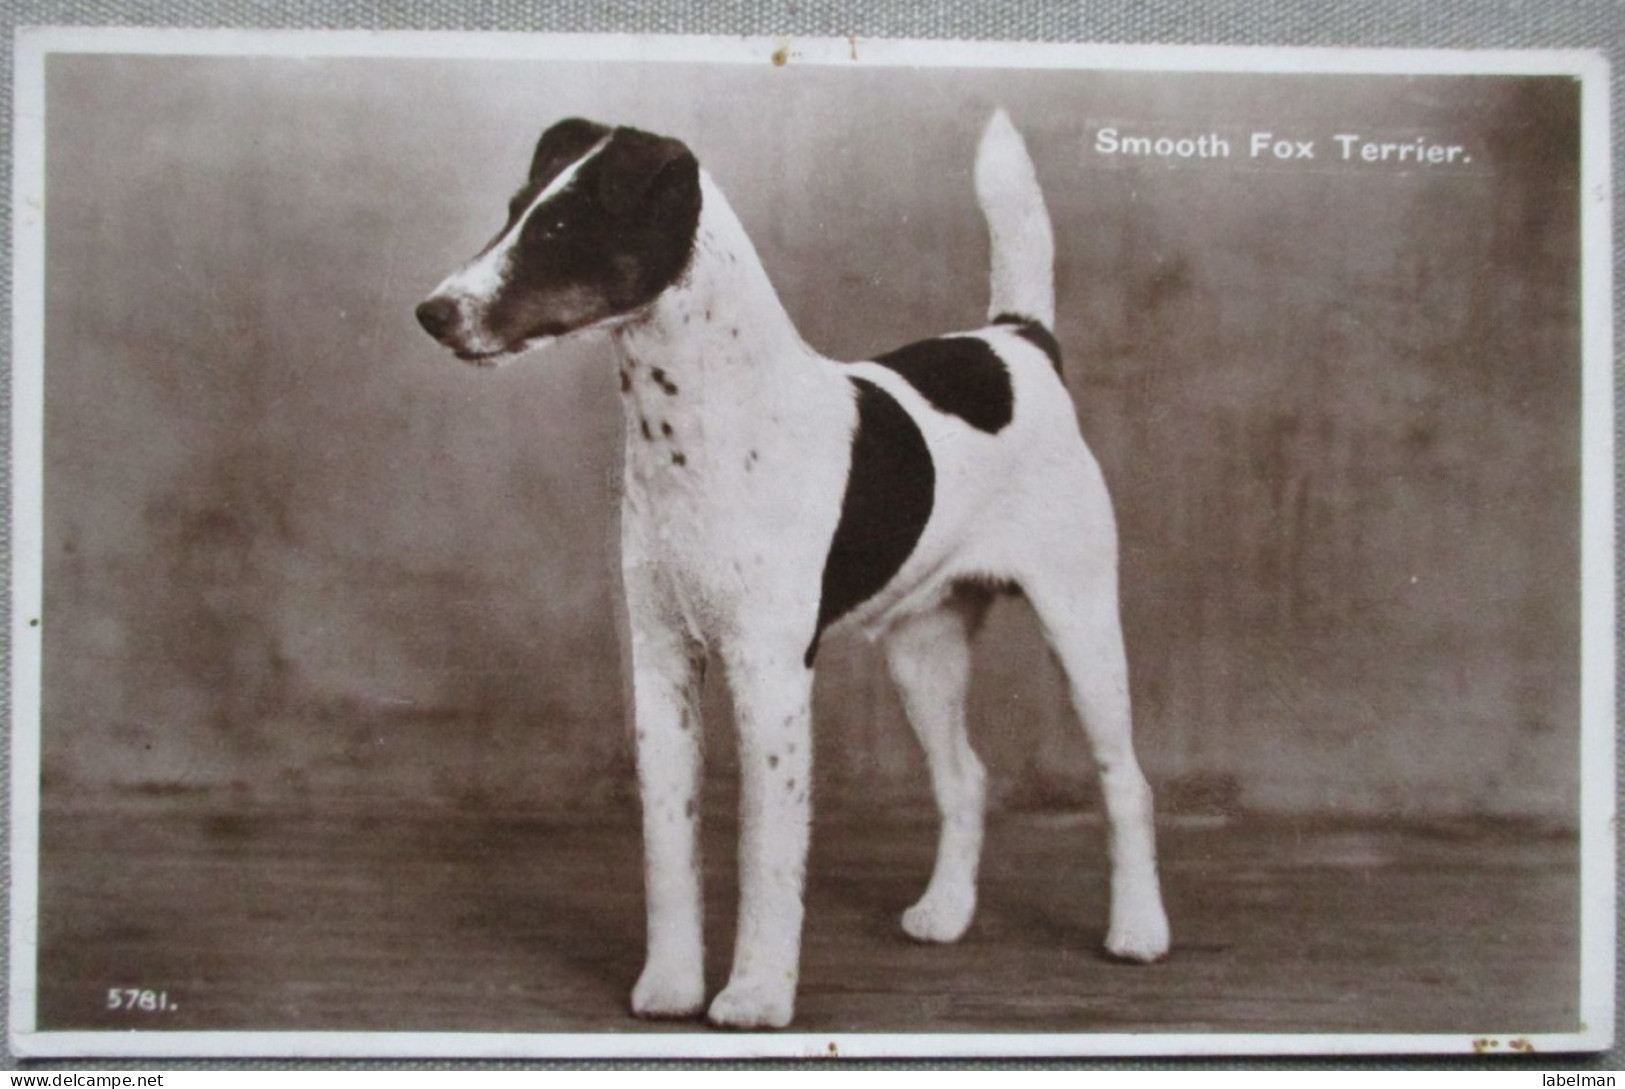 ENGLAND UK UNITED KINGDOM SMOOTH FOX TERRIER DOG KARTE CARD POSTKARTE POSTCARD ANSICHTSKARTE CARTOLINA CARTE POSTALE - Verzamelingen & Kavels